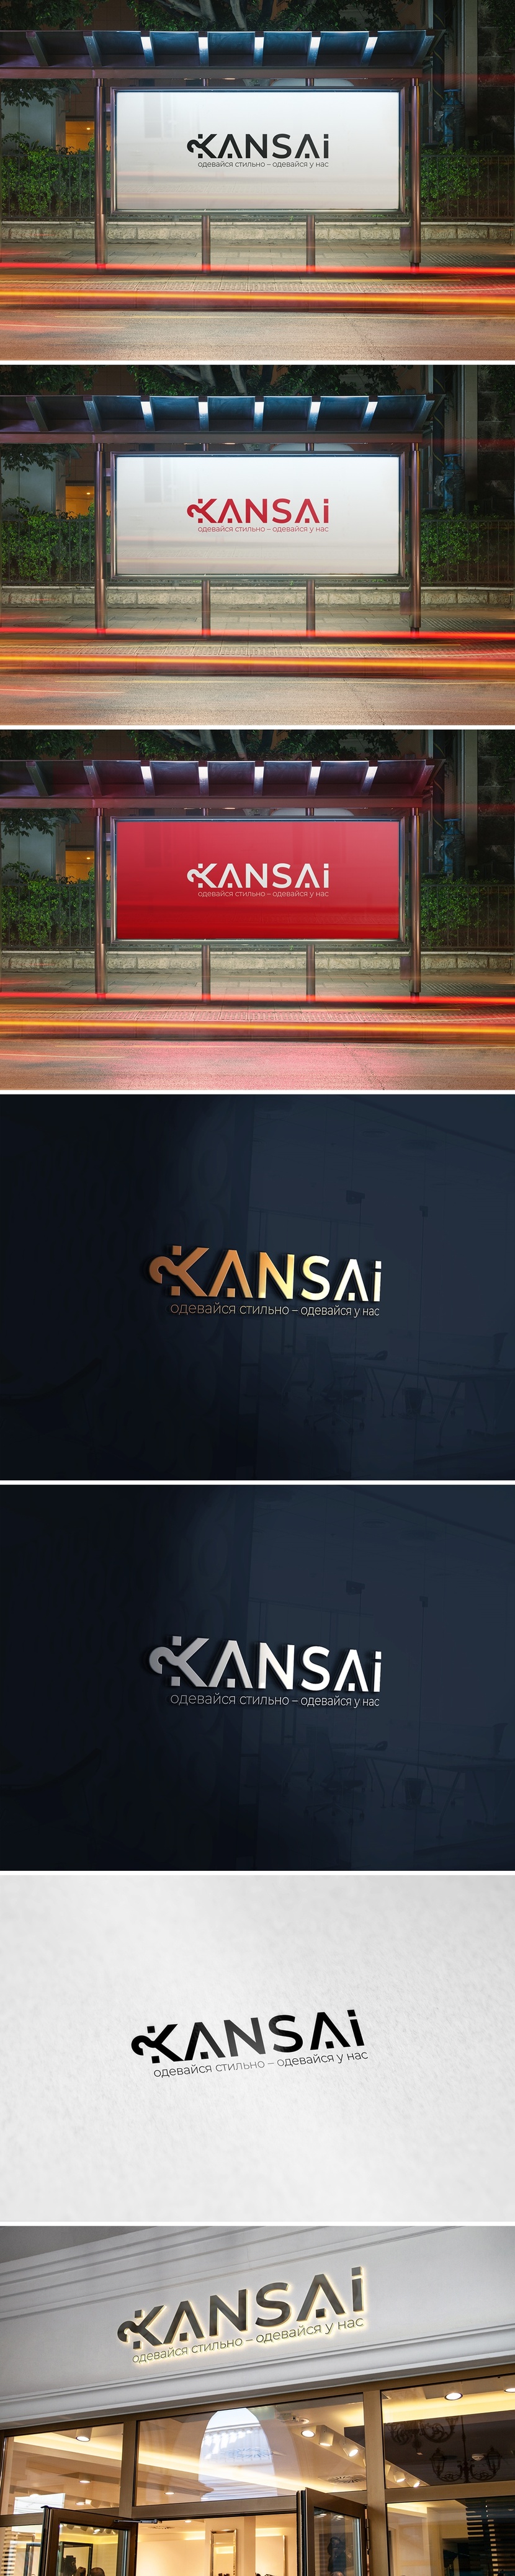 Kansai - Разработка логотипа, фирменного знака, комплекта деловой документации